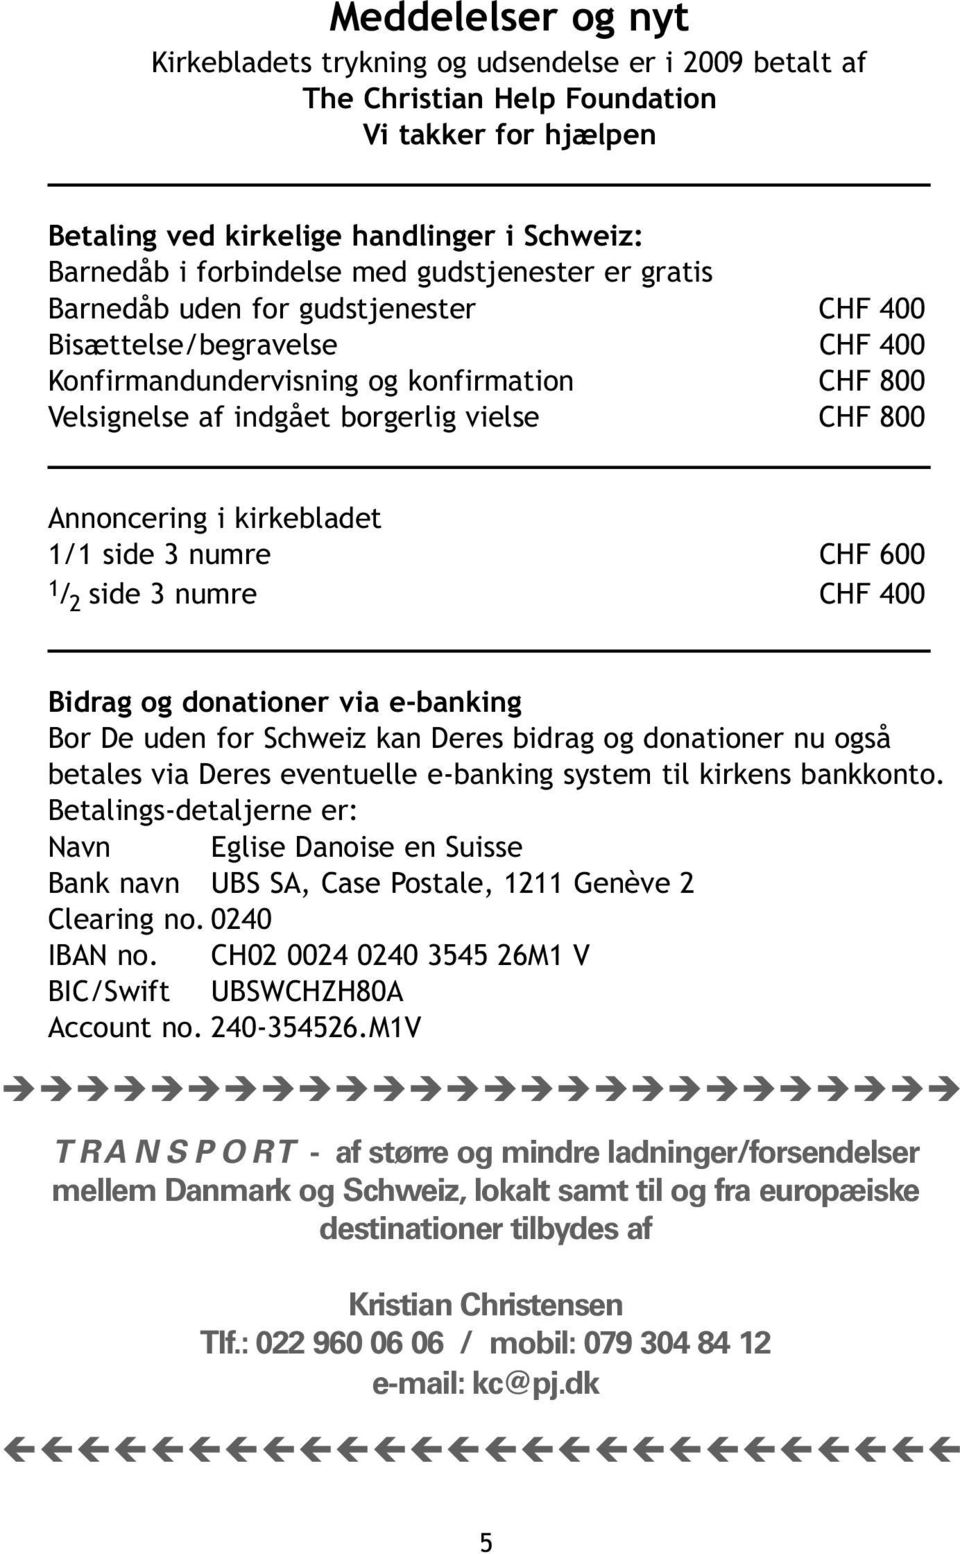 Annoncering i kirkebladet 1/1 side 3 numre CHF 600 1 / 2 side 3 numre CHF 400 Bidrag og donationer via e-banking Bor De uden for Schweiz kan Deres bidrag og donationer nu også betales via Deres